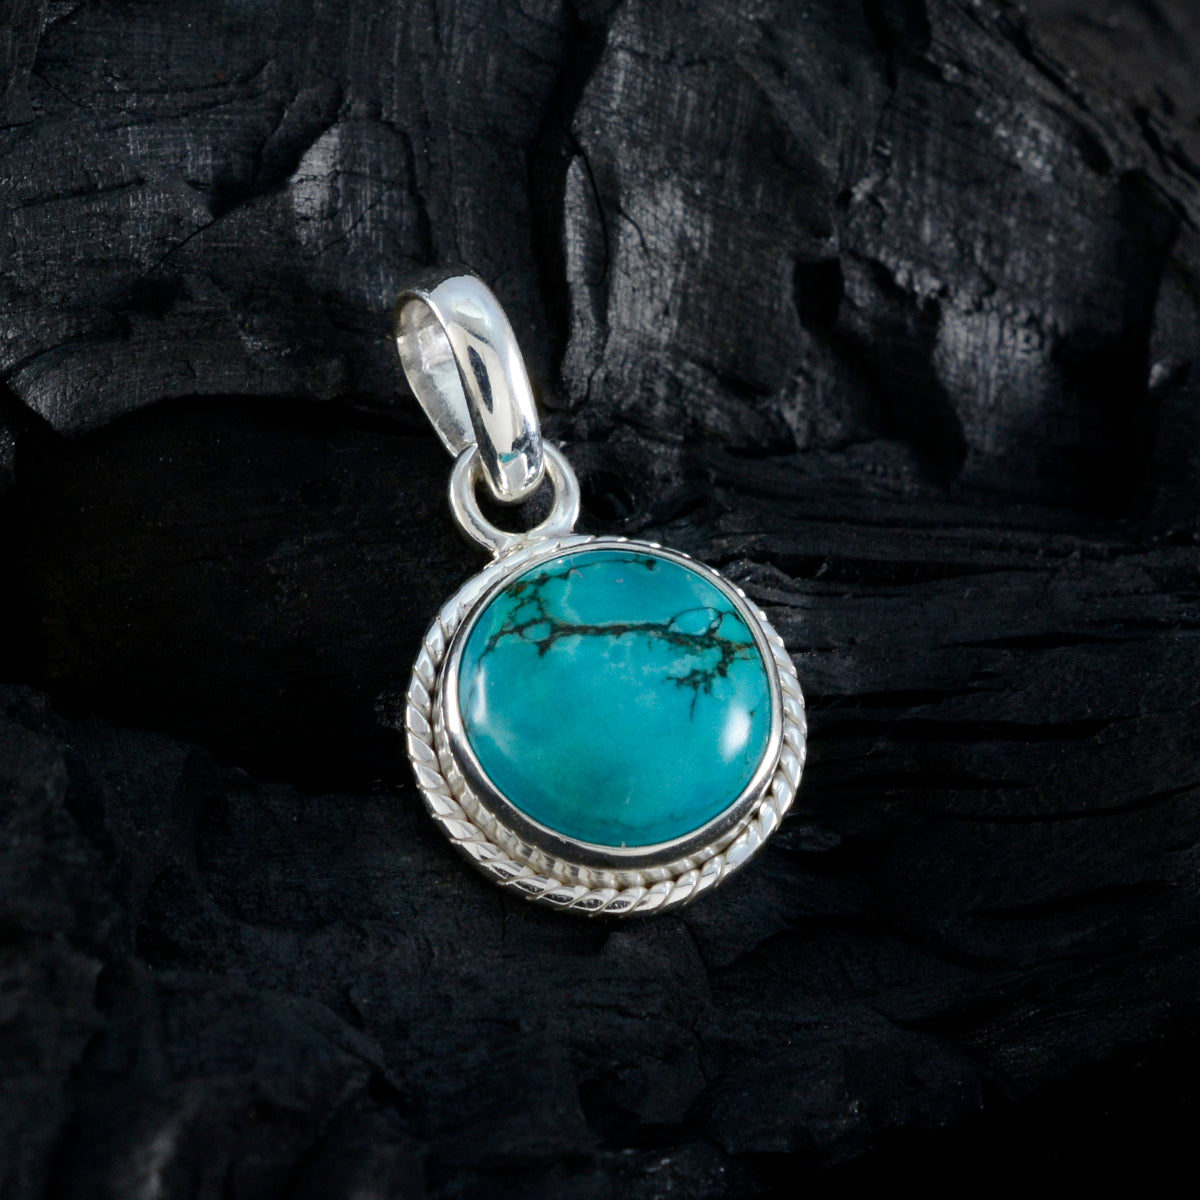 riyo pierre précieuse céleste cabochon rond bleu turquoise pendentif en argent sterling cadeau pour la main